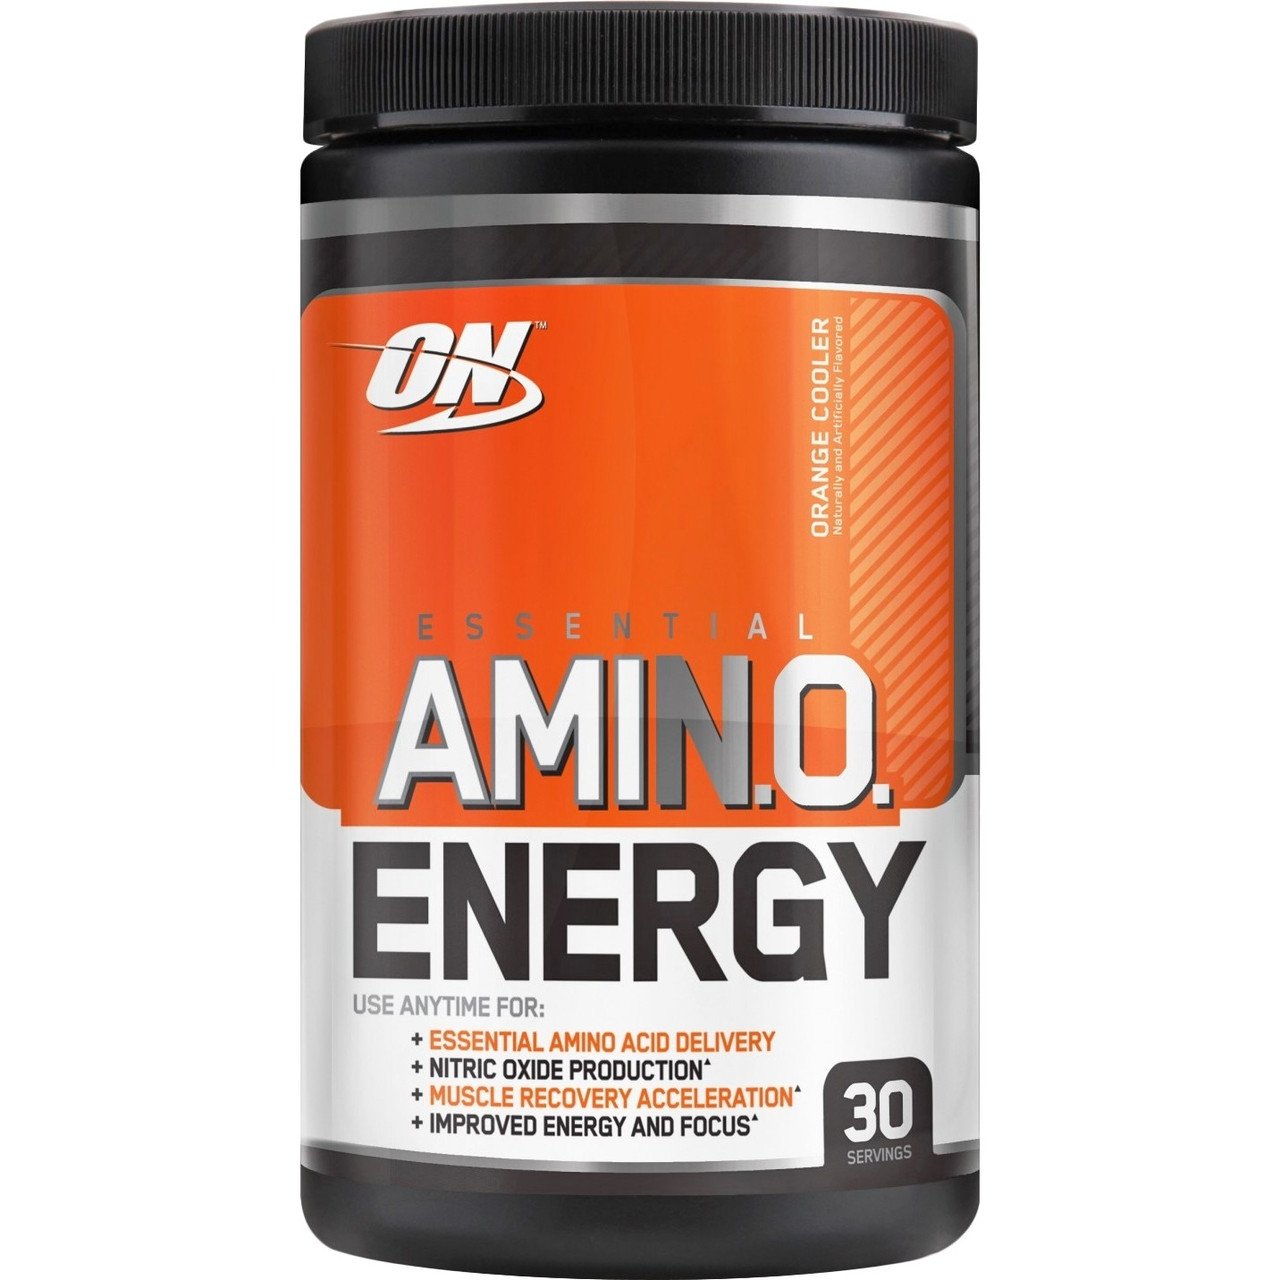 Amino Energy Optimum Nutrition 270 g,  мл, Optimum Nutrition. Послетренировочный комплекс. Восстановление 